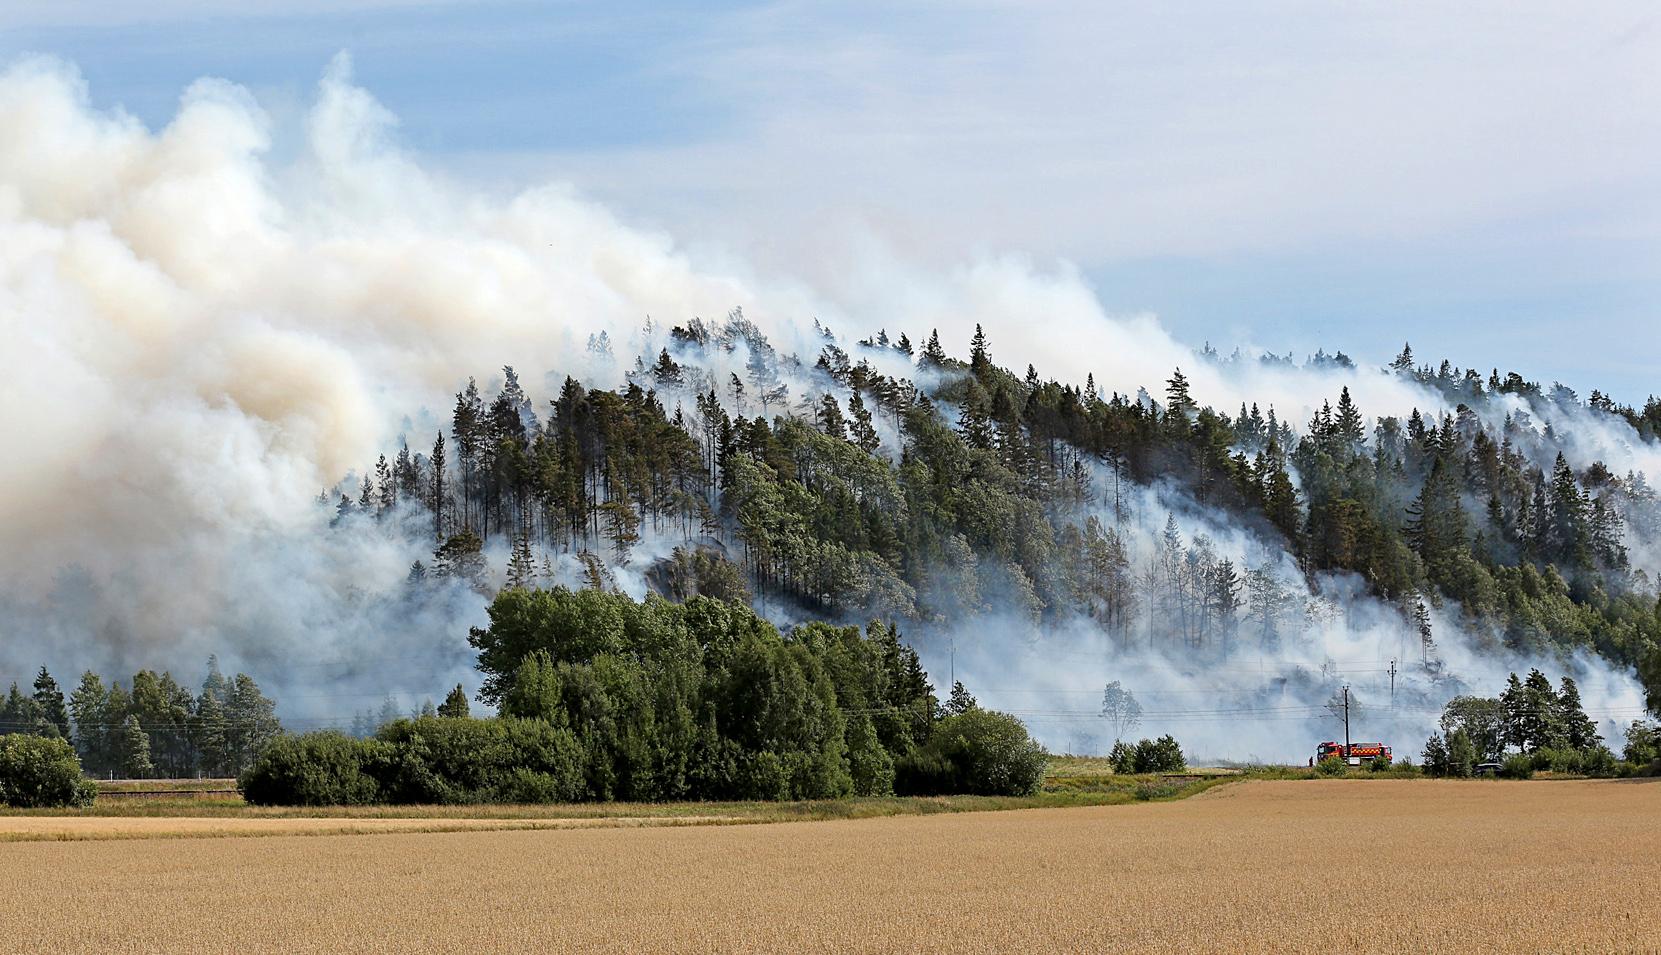 Efter krocken har elden spridit sig till ett stort skogsområde.